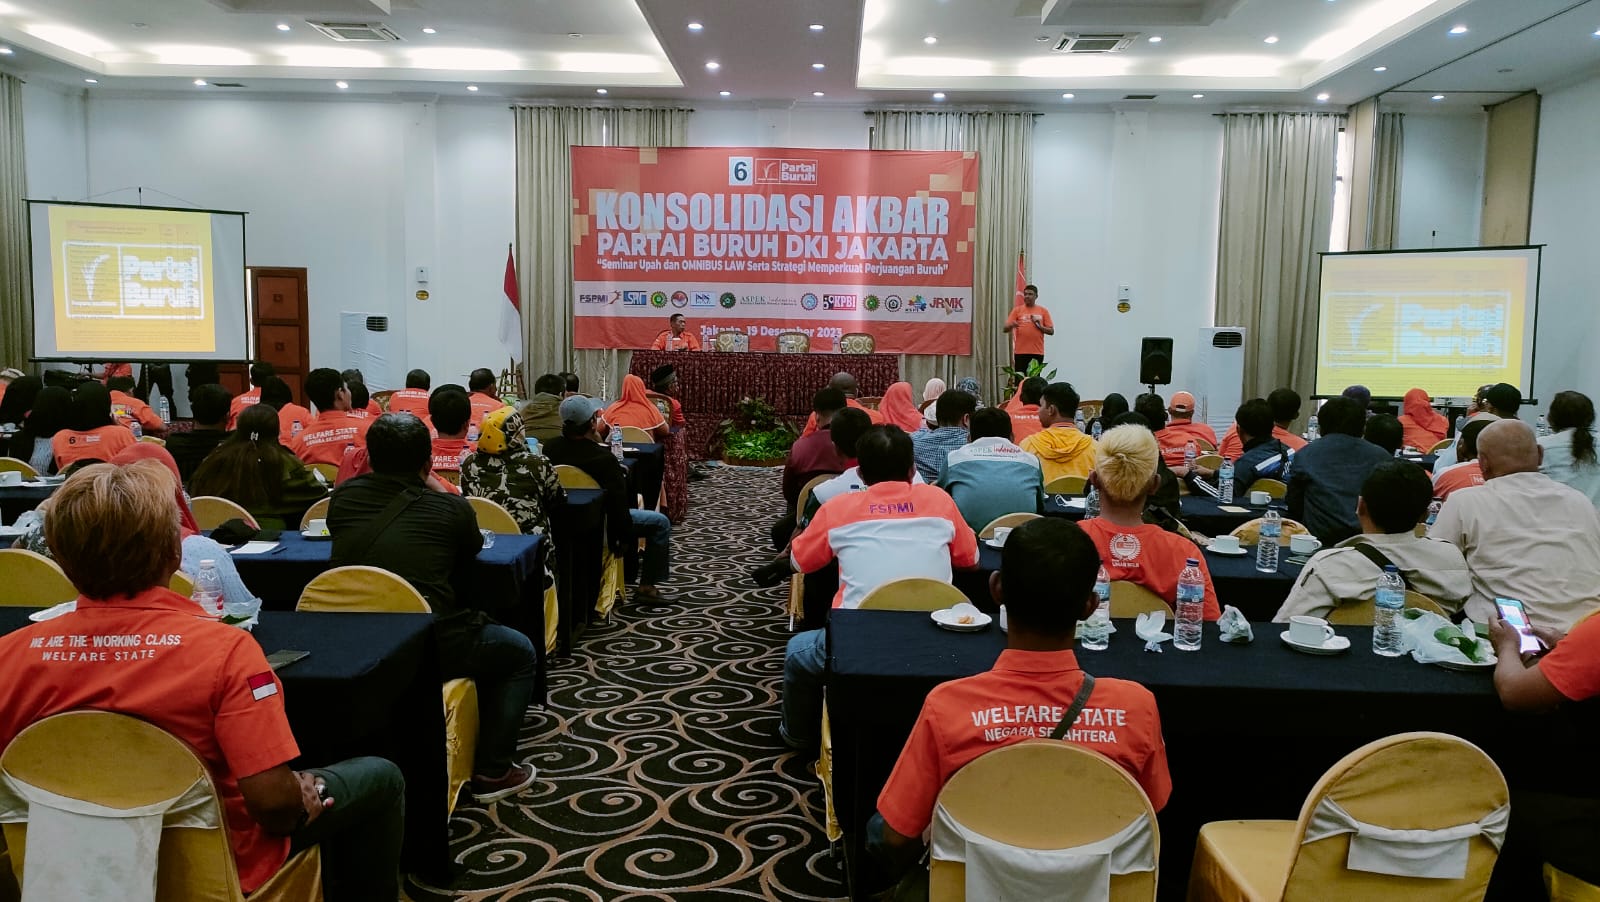 Ratusan Buruh Hadiri Konsolidasi Akbar Partai Buruh DKI Jakarta: Perkuat Perjuangan Buruh Terkait Upah dan Omnibus Law